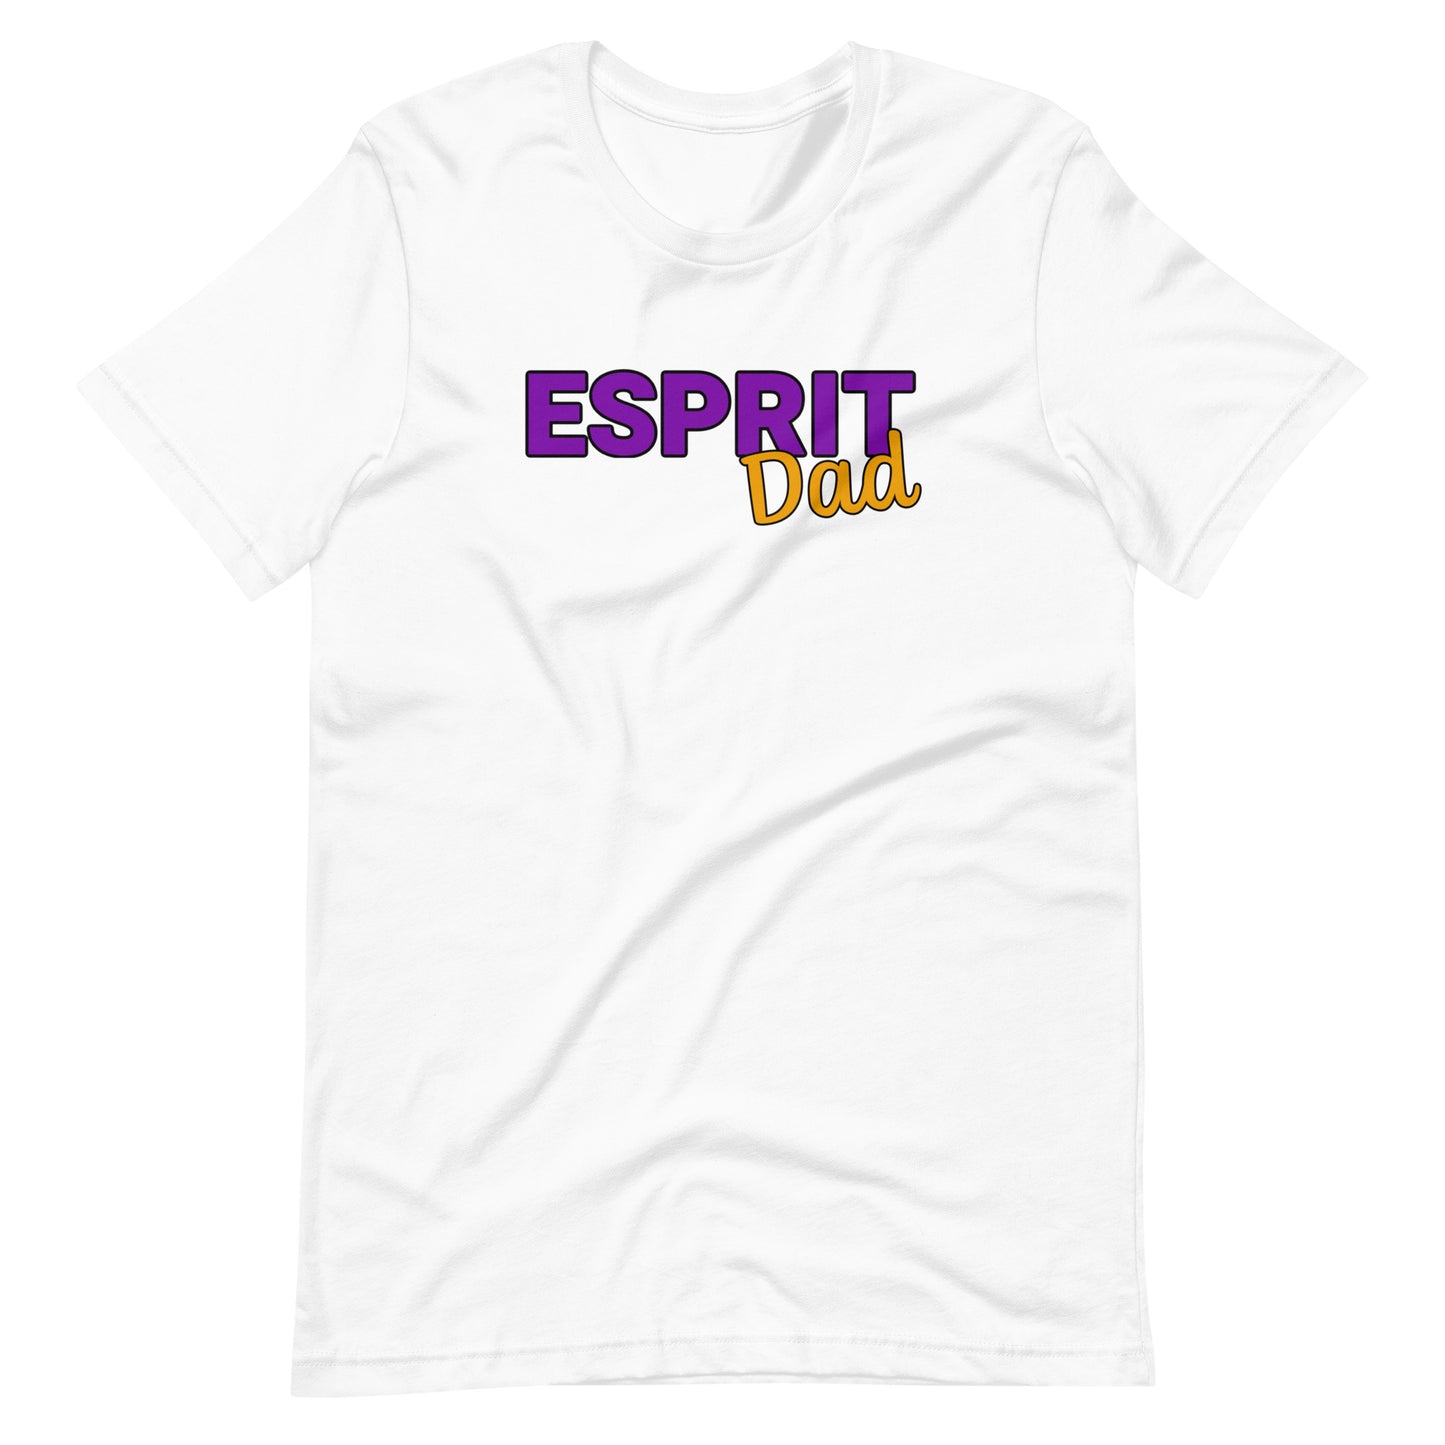 Esprit Performing Arts Adult T-shirt - Dad